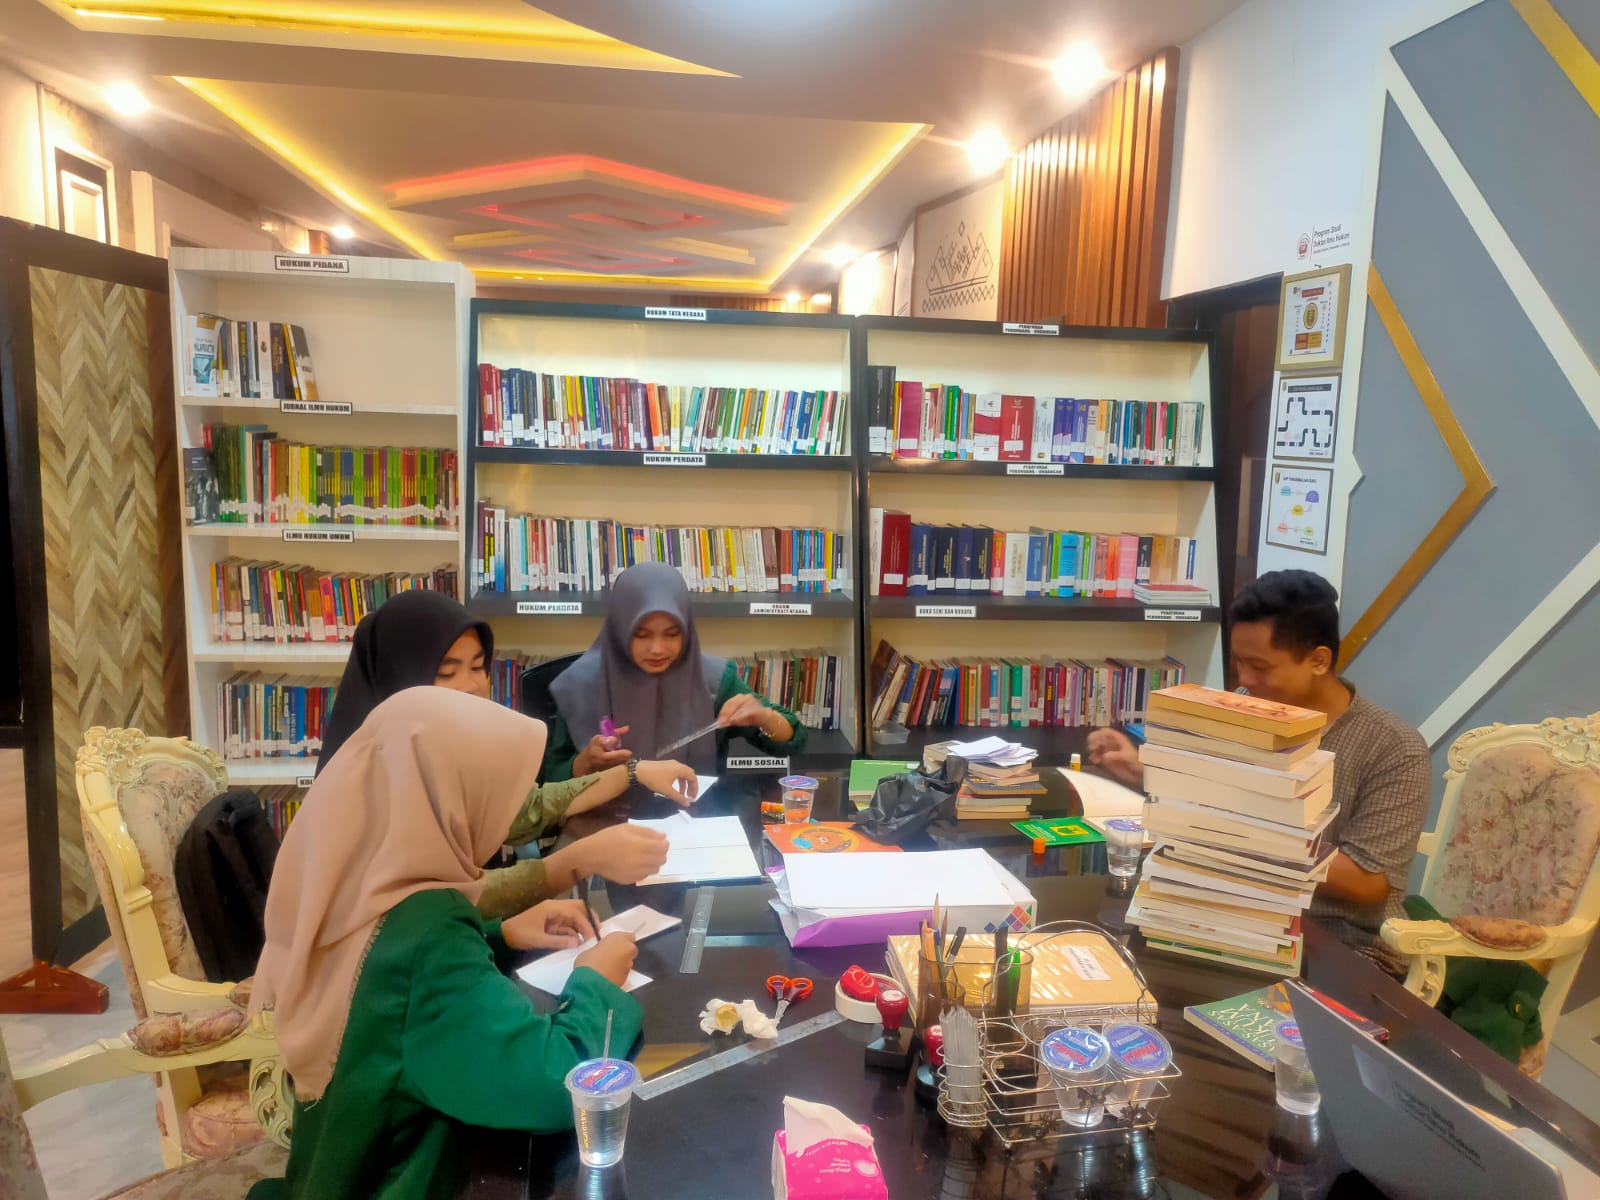 Pelaksanaan Magang Mahasiswa/i Universitas Islam Negeri Prodi Ilmu Perpustakaan dan Informasi Islam di Perpustakaan Hukum JDIH Biro Hukum Setdaprov Lampung